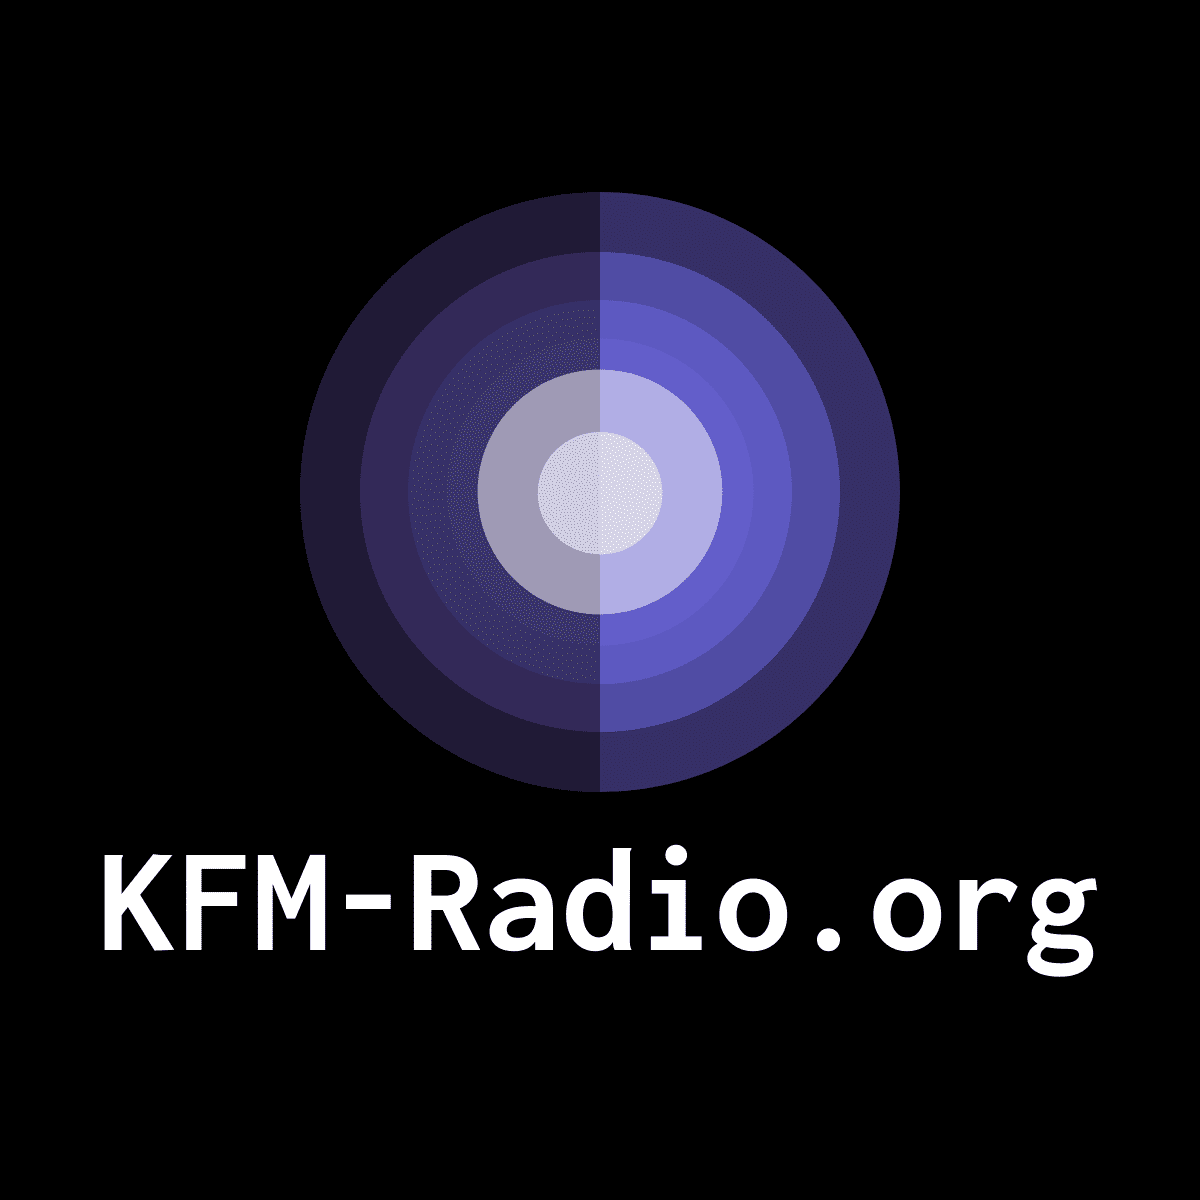 KFM-Radio